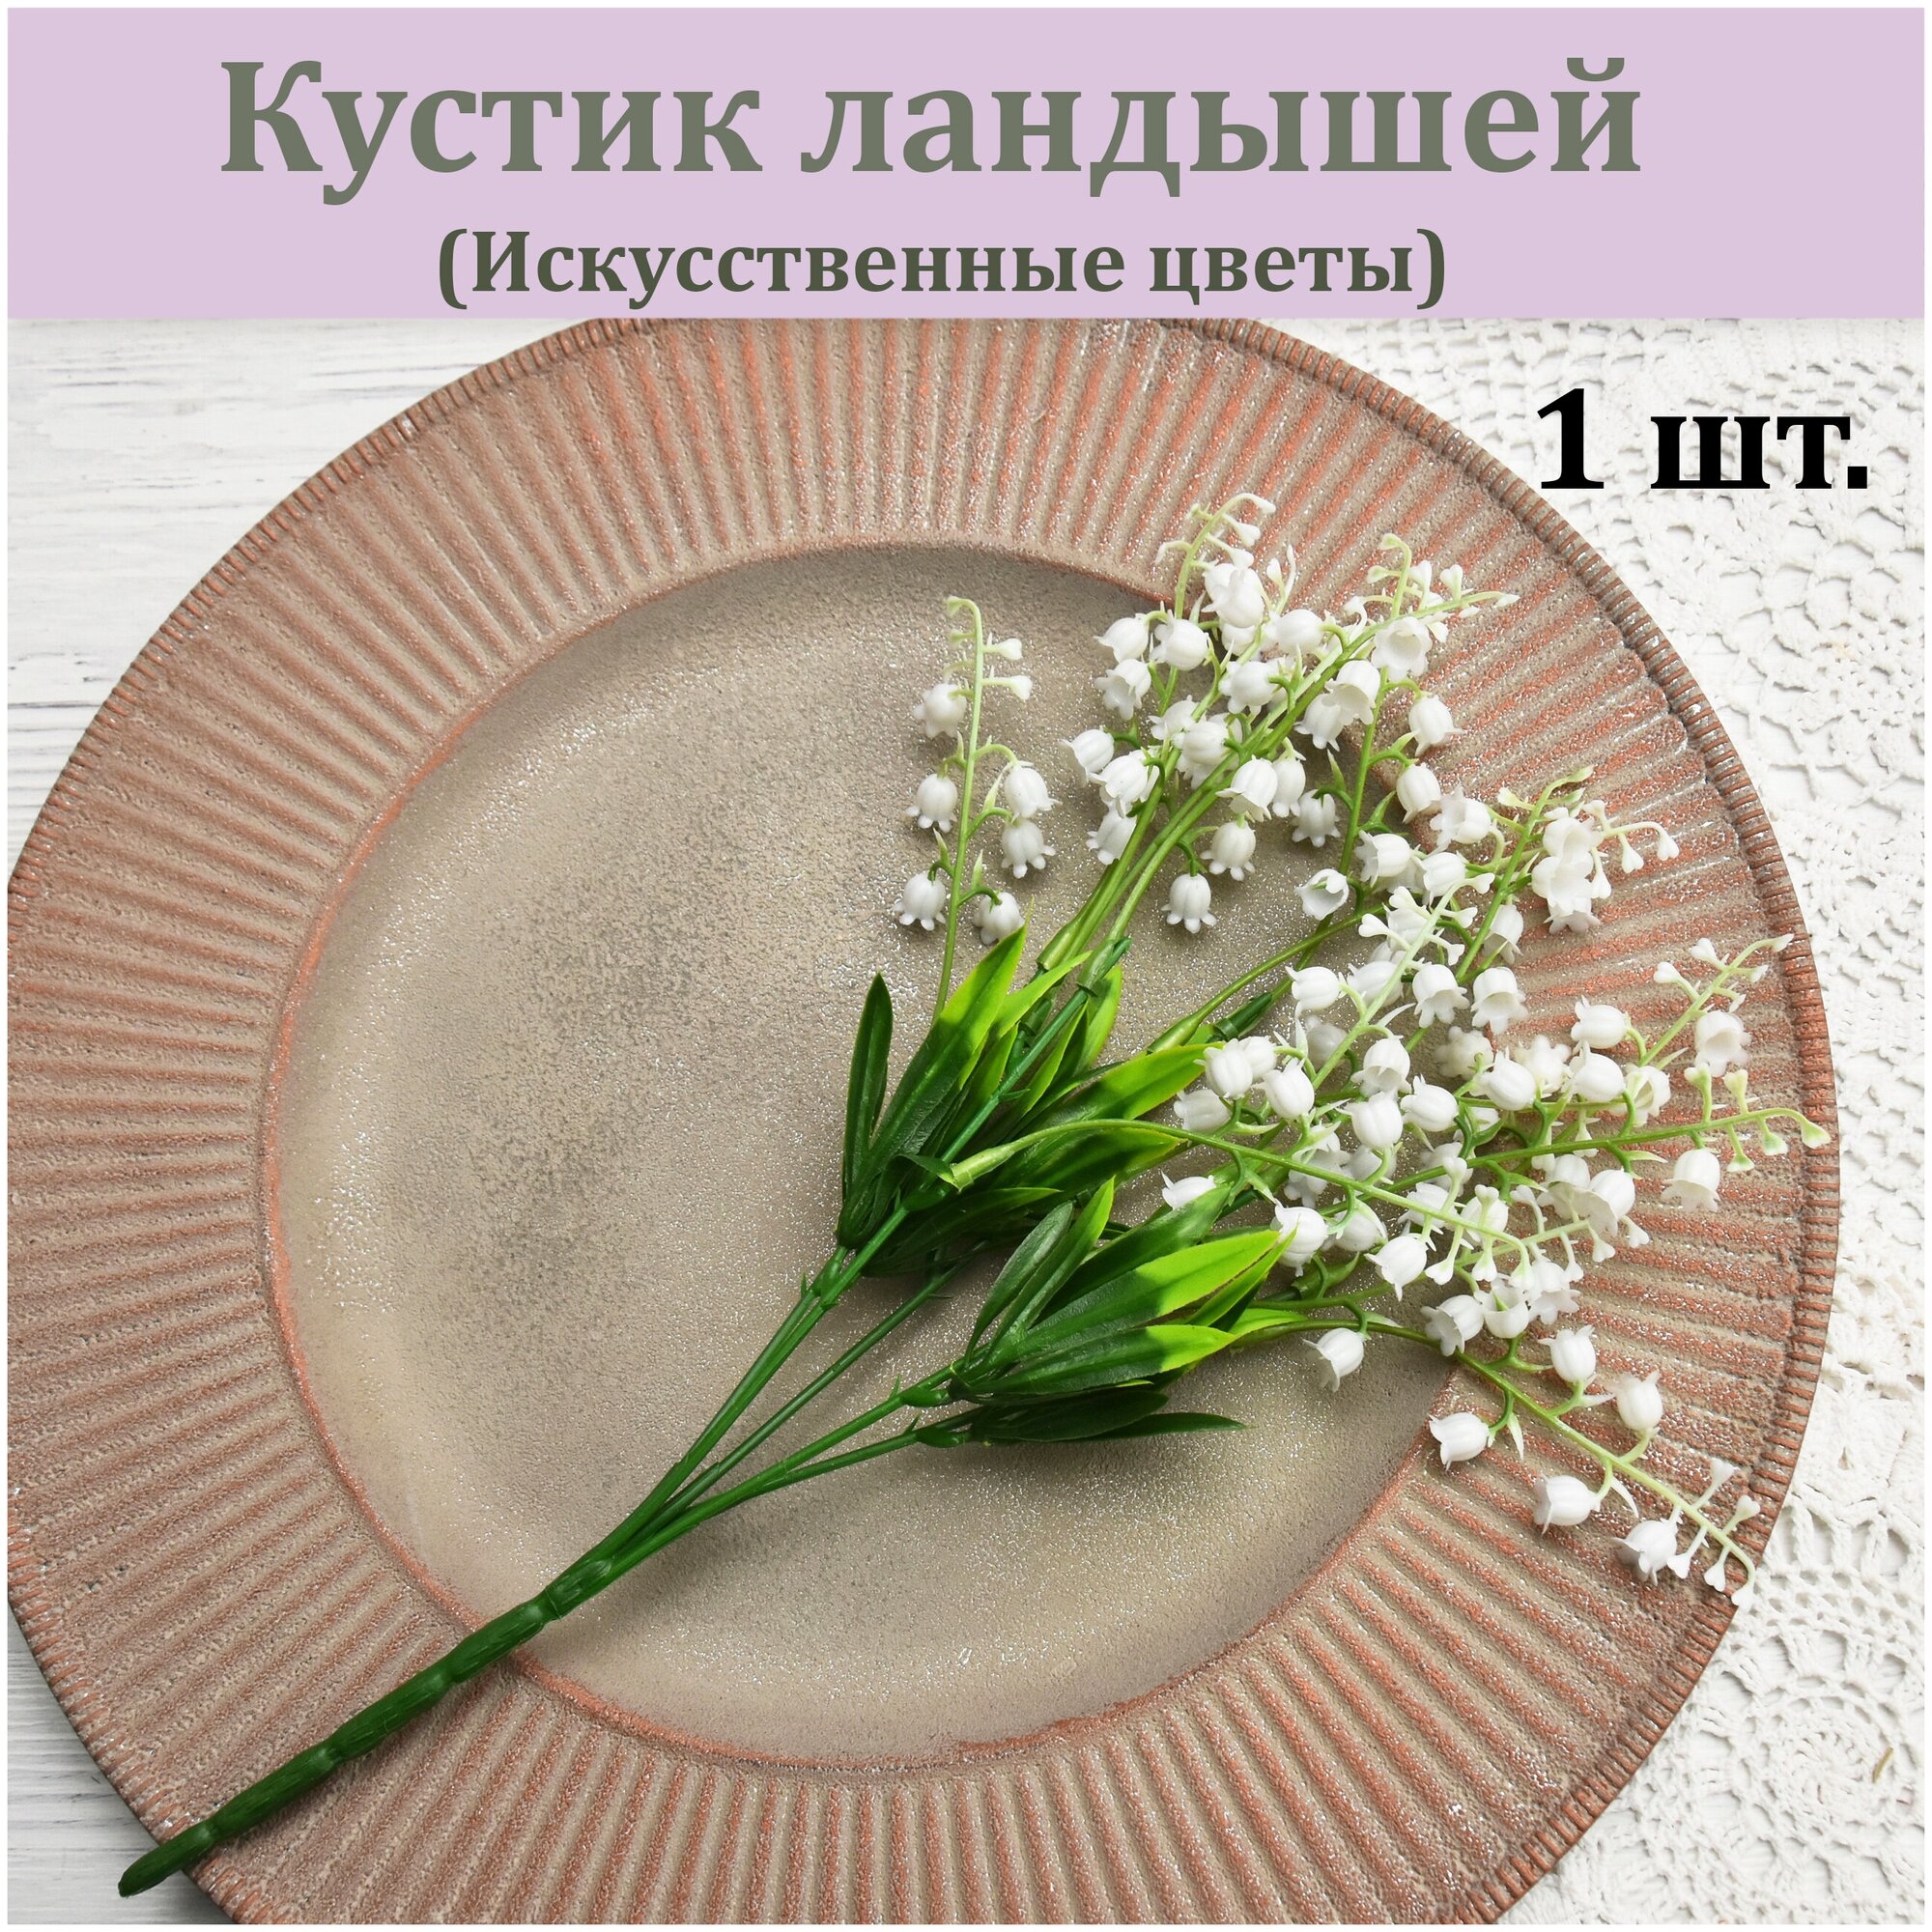 Кустик ландышей 1 шт. / Растение искусственное для декора / Реалистичный весенний цветок